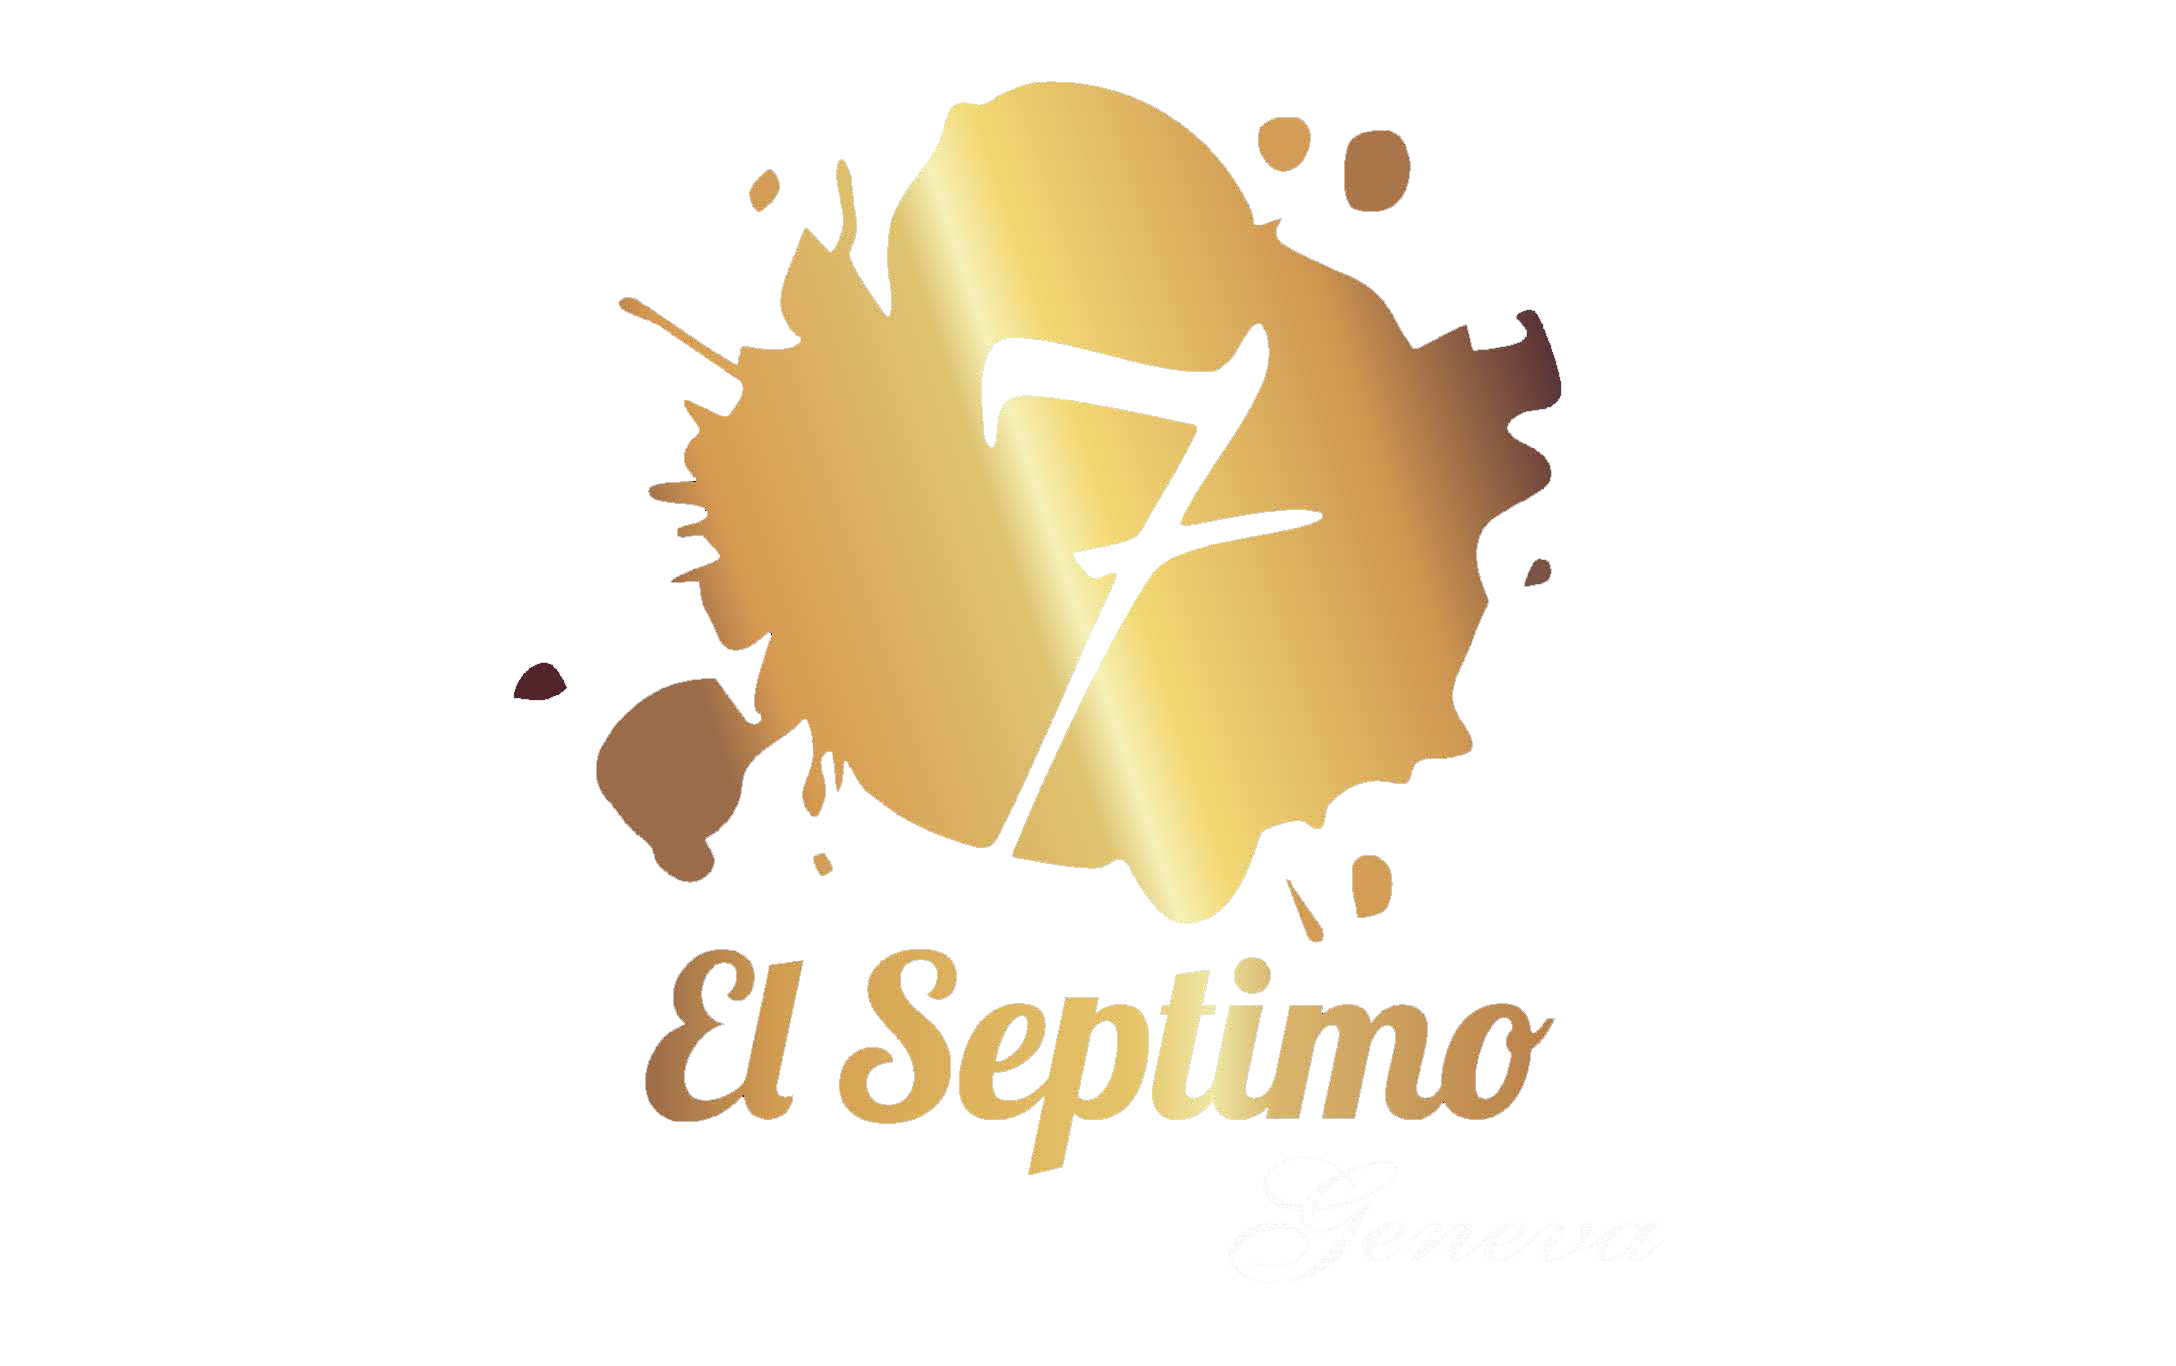 El Septimo Excepcion Esmerelda - 5 Pack